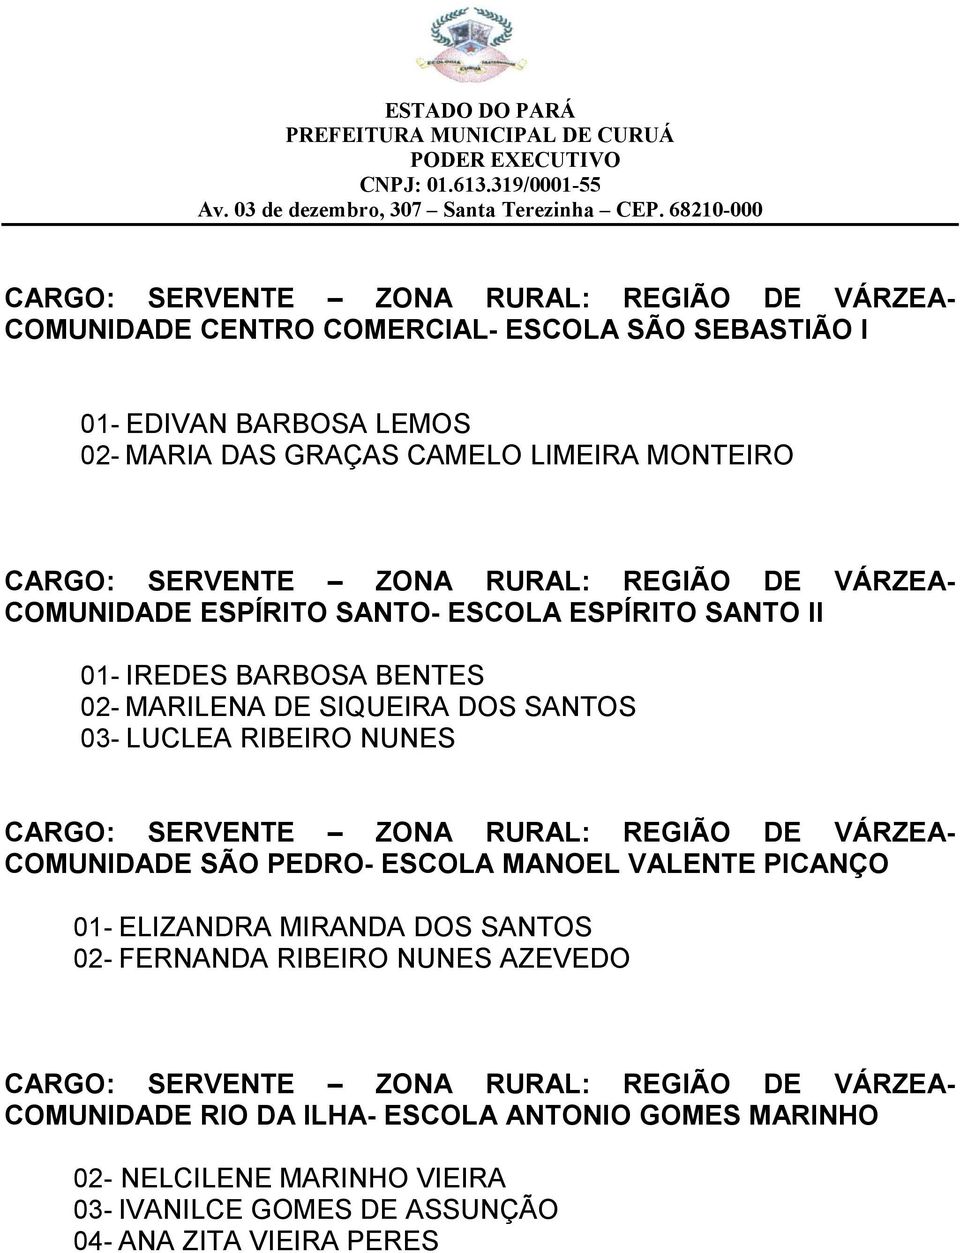 RIBEIRO NUNES COMUNIDADE SÃO PEDRO- ESCOLA MANOEL VALENTE PICANÇO 01- ELIZANDRA MIRANDA DOS SANTOS 02- FERNANDA RIBEIRO NUNES